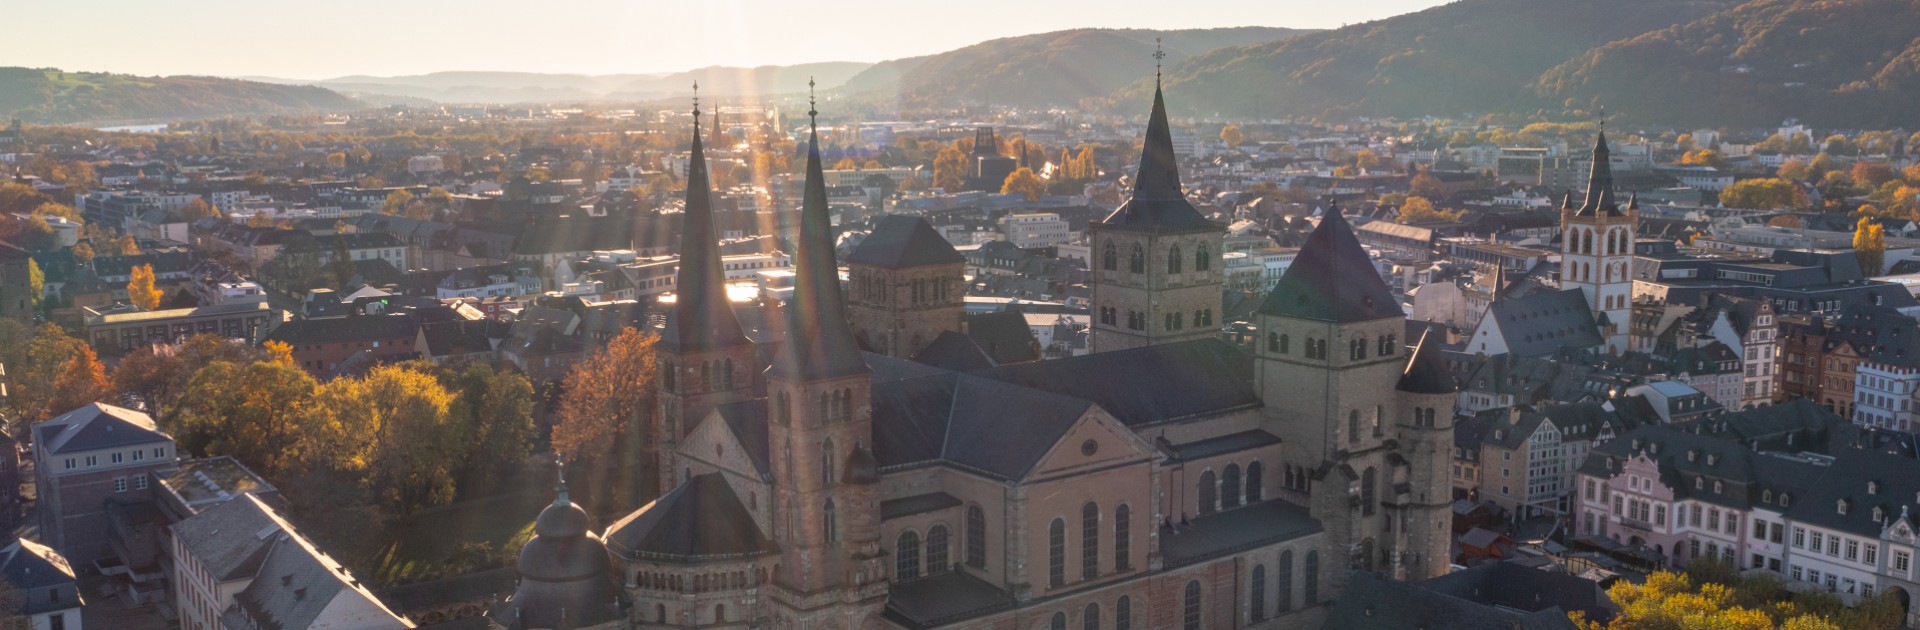 Luftbild Trierer Altstadt mit Dom und Sankt Gangolf - © Trier Tourismus und Marketing / Victor Beusch